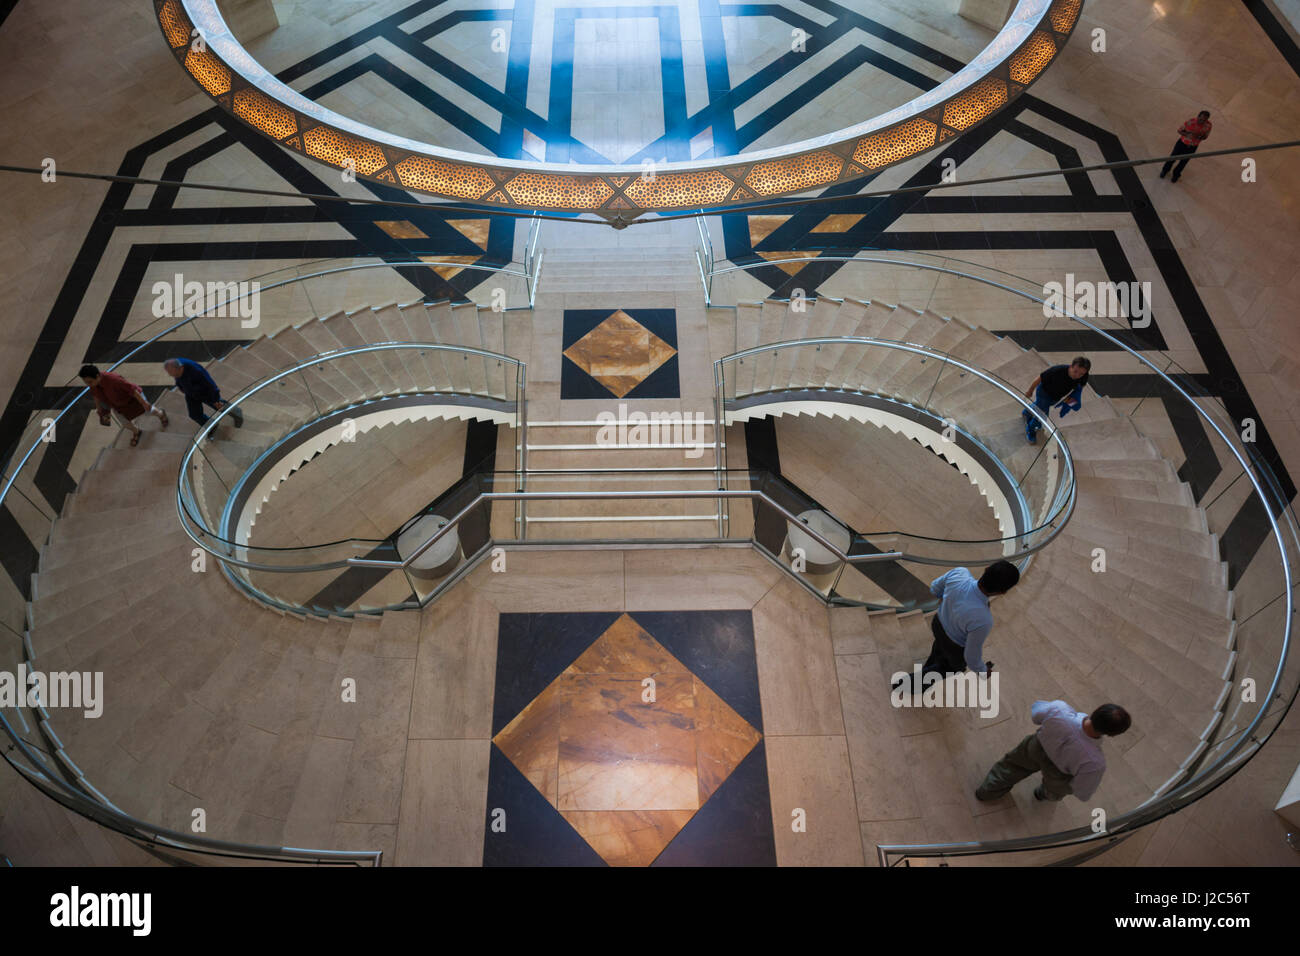 Qatar, Doha, le Musée d'Art Islamique, conçu par I.M. Pei, atrium, elevated view Banque D'Images